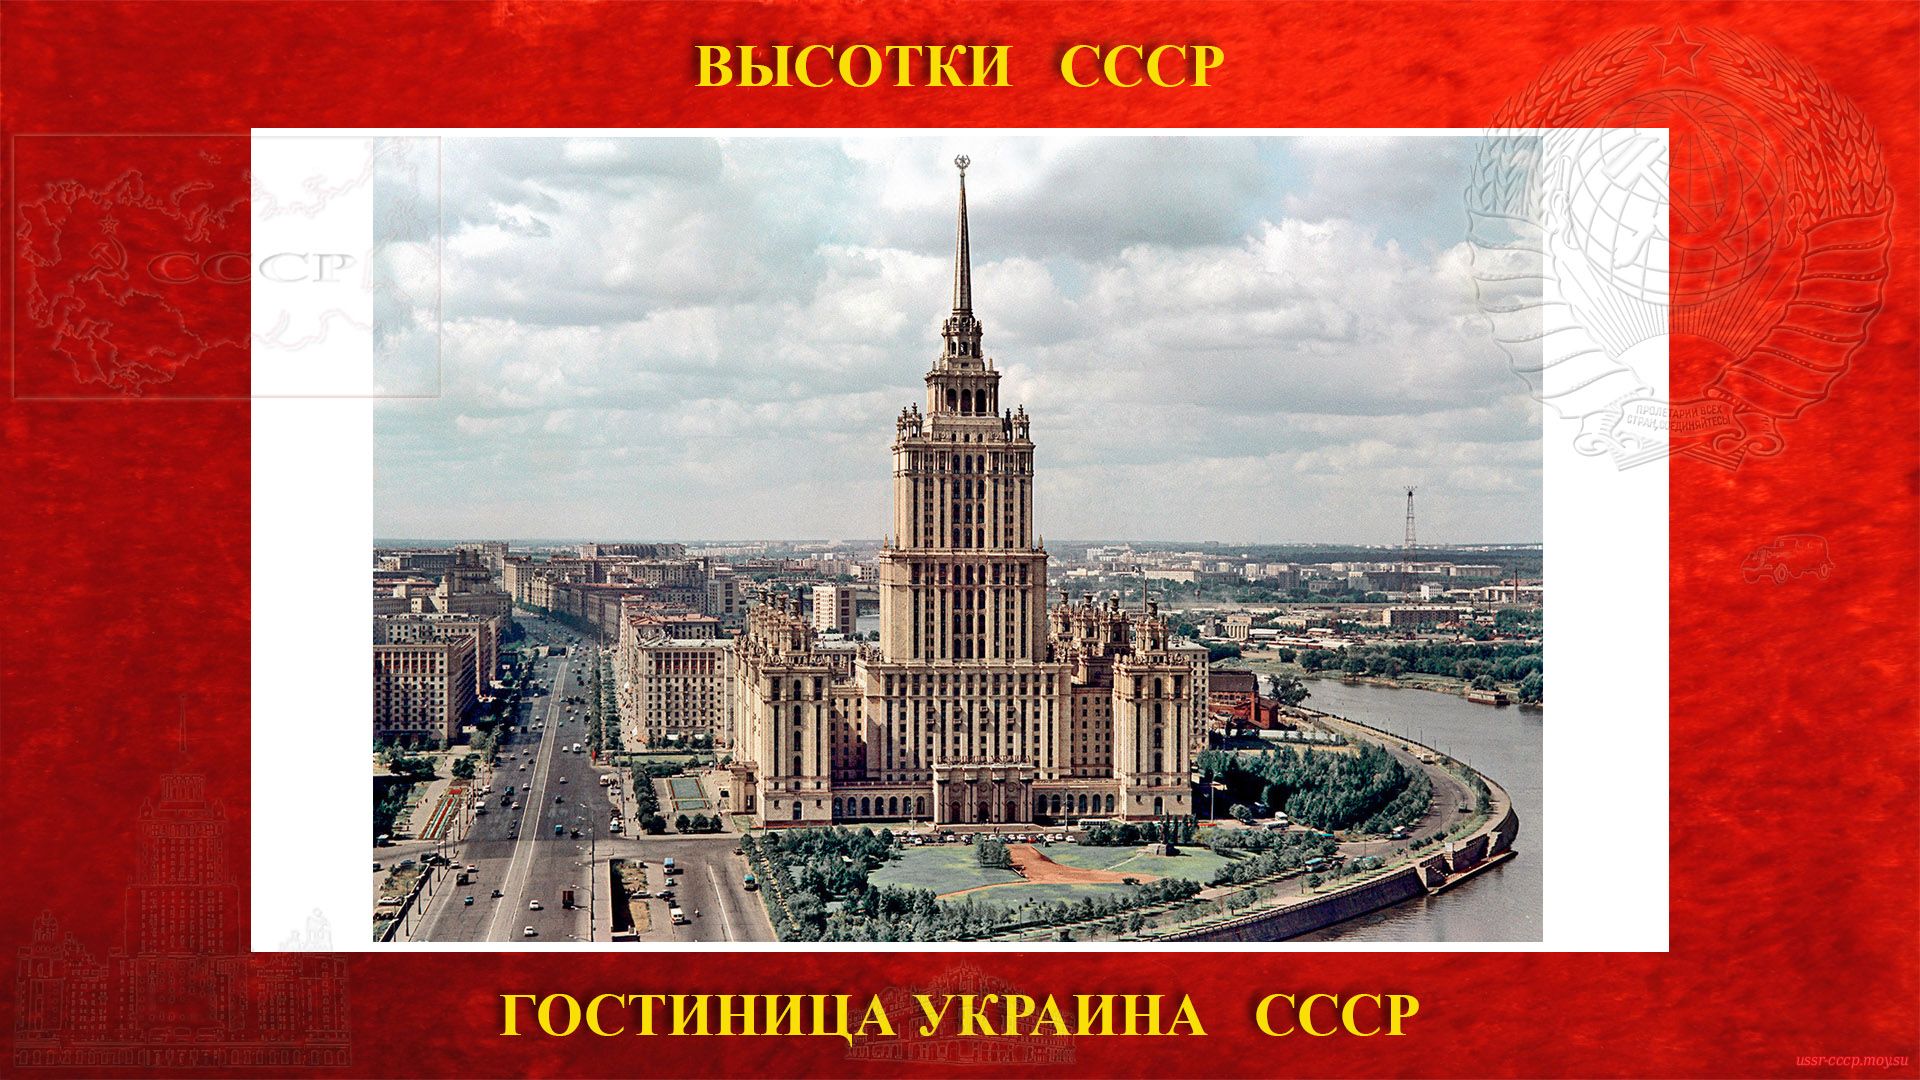 Гостиница Украина и ЖД (Москва) — (Сталинская высотка) (повествование)